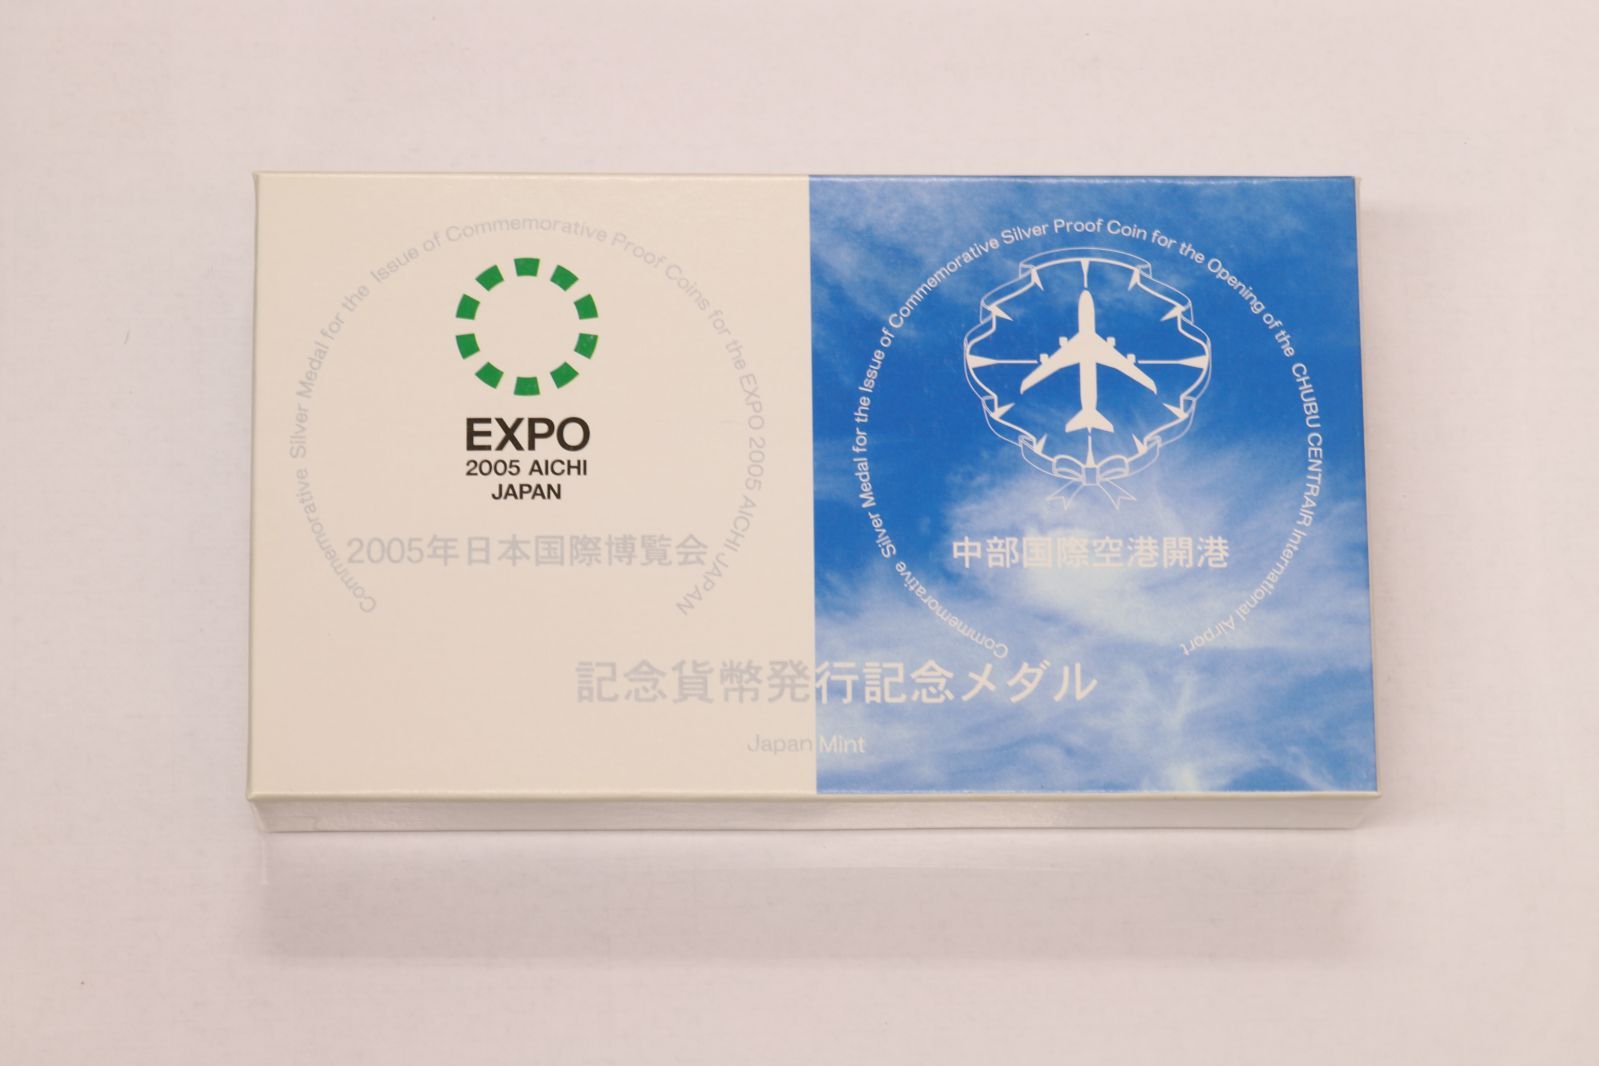 2005年日本国際博覧会 · 中部国際空港開港 記念メダル